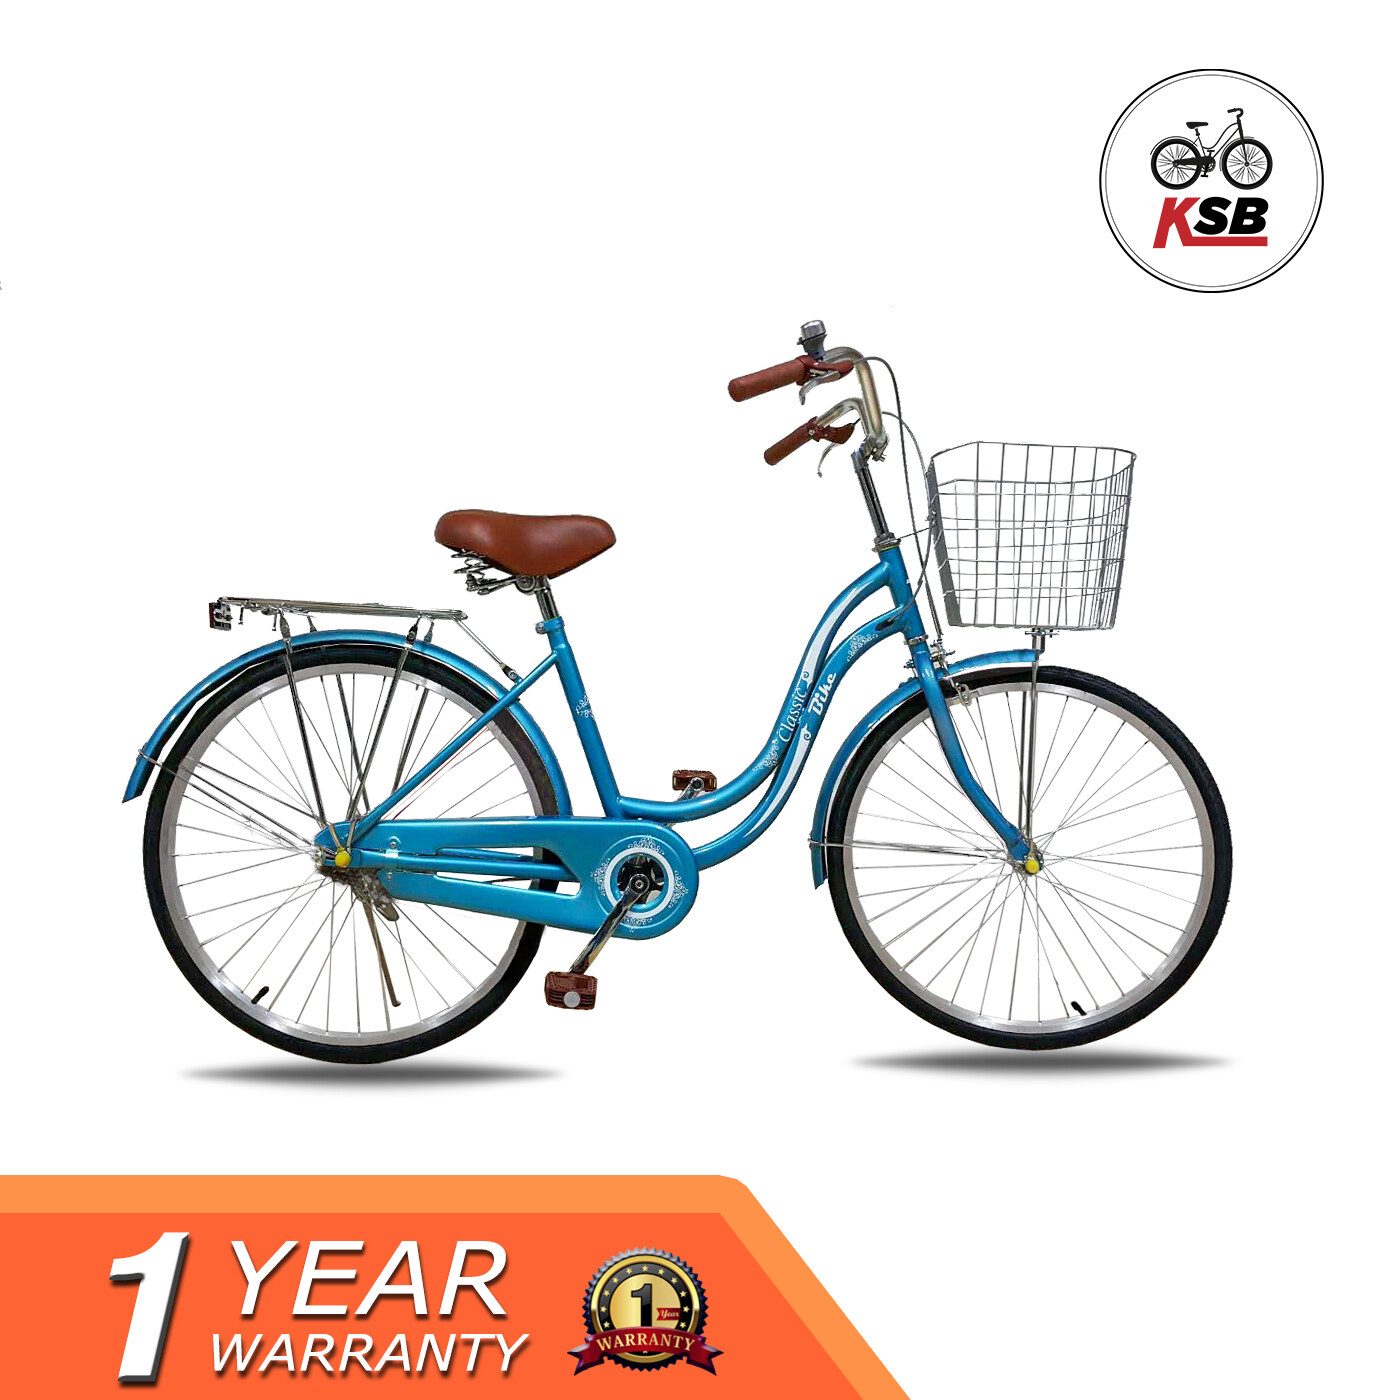 จักรยานแม่บ้าน KSB ทรงญี่ปุ่น รุ่นClassic ขายดี สีฟ้าเข้ม คอปเปอร์บลู 24 นิ้ว